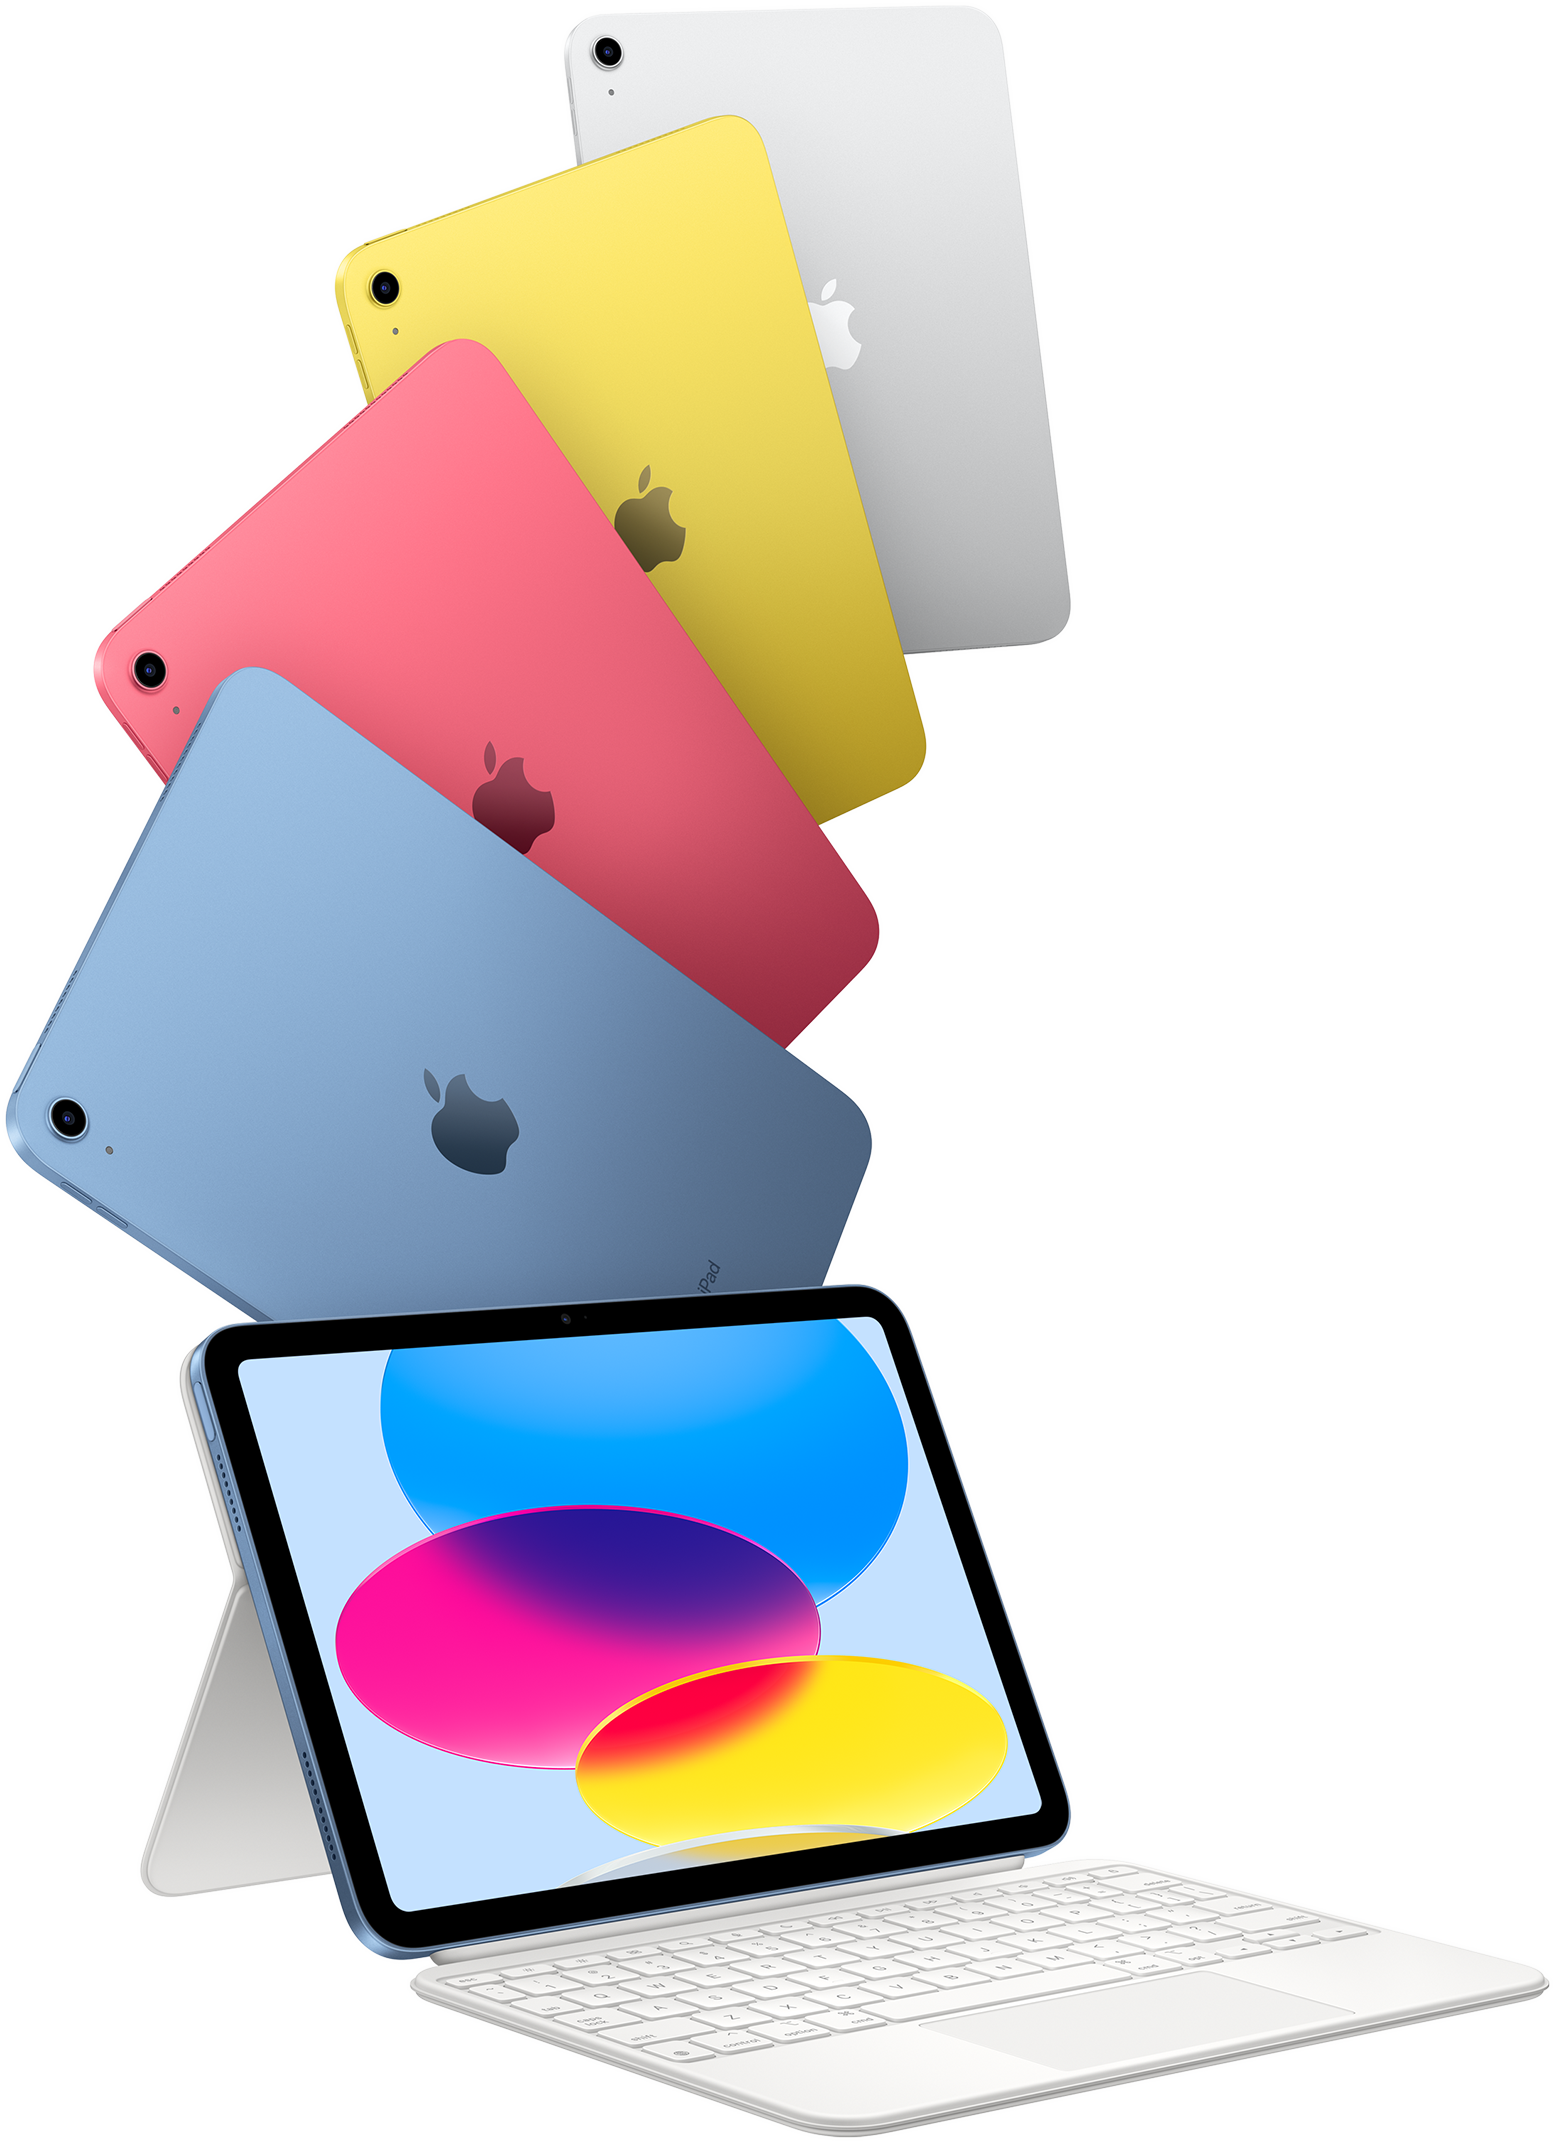 iPad in Blau, Pink, Gelb und Silber und ein iPad verbunden mit dem Magic Keyboard Folio.